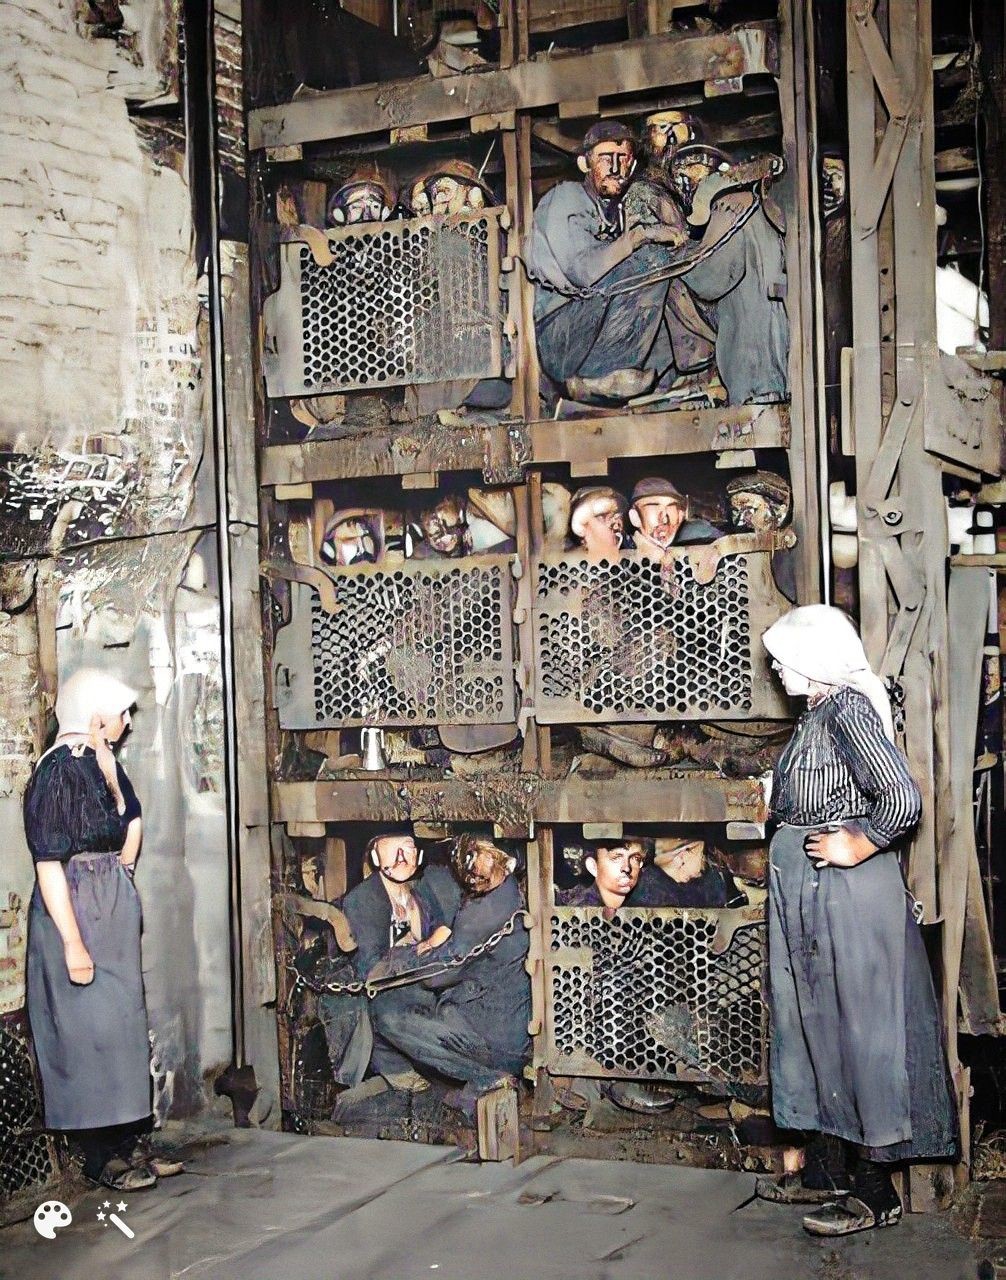 35. Бельгийские шахтеры забились в лифт шахты после рабочего дня, примерно 1900 год